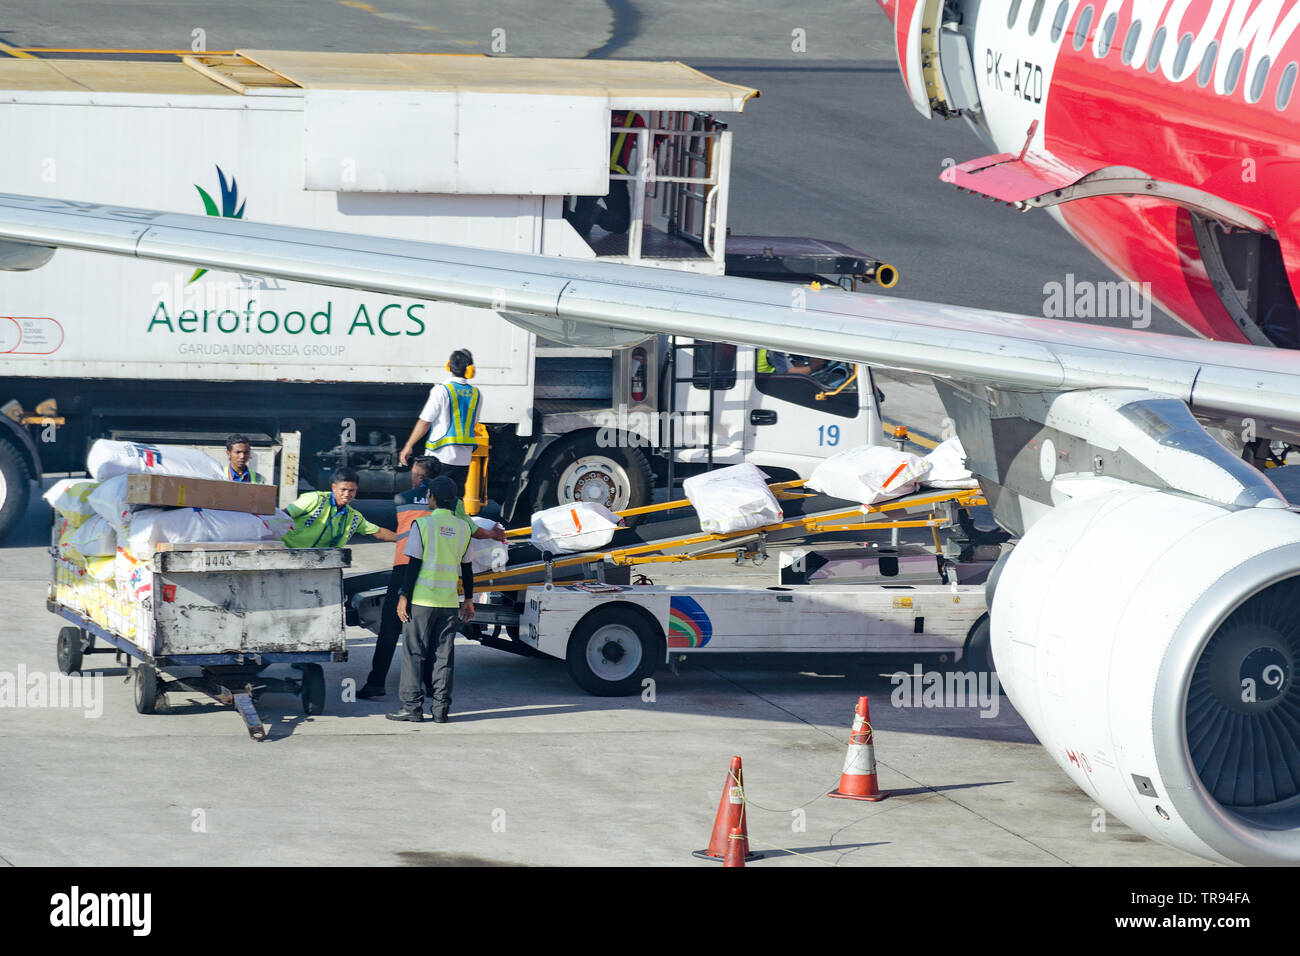 Bali, Denpasar, 2018-05-01: los trabajadores del aeropuerto de carga suministros de catering en los aviones. El personal de tierra pone el embalaje con alimentos de ACS Aerofood Foto de stock